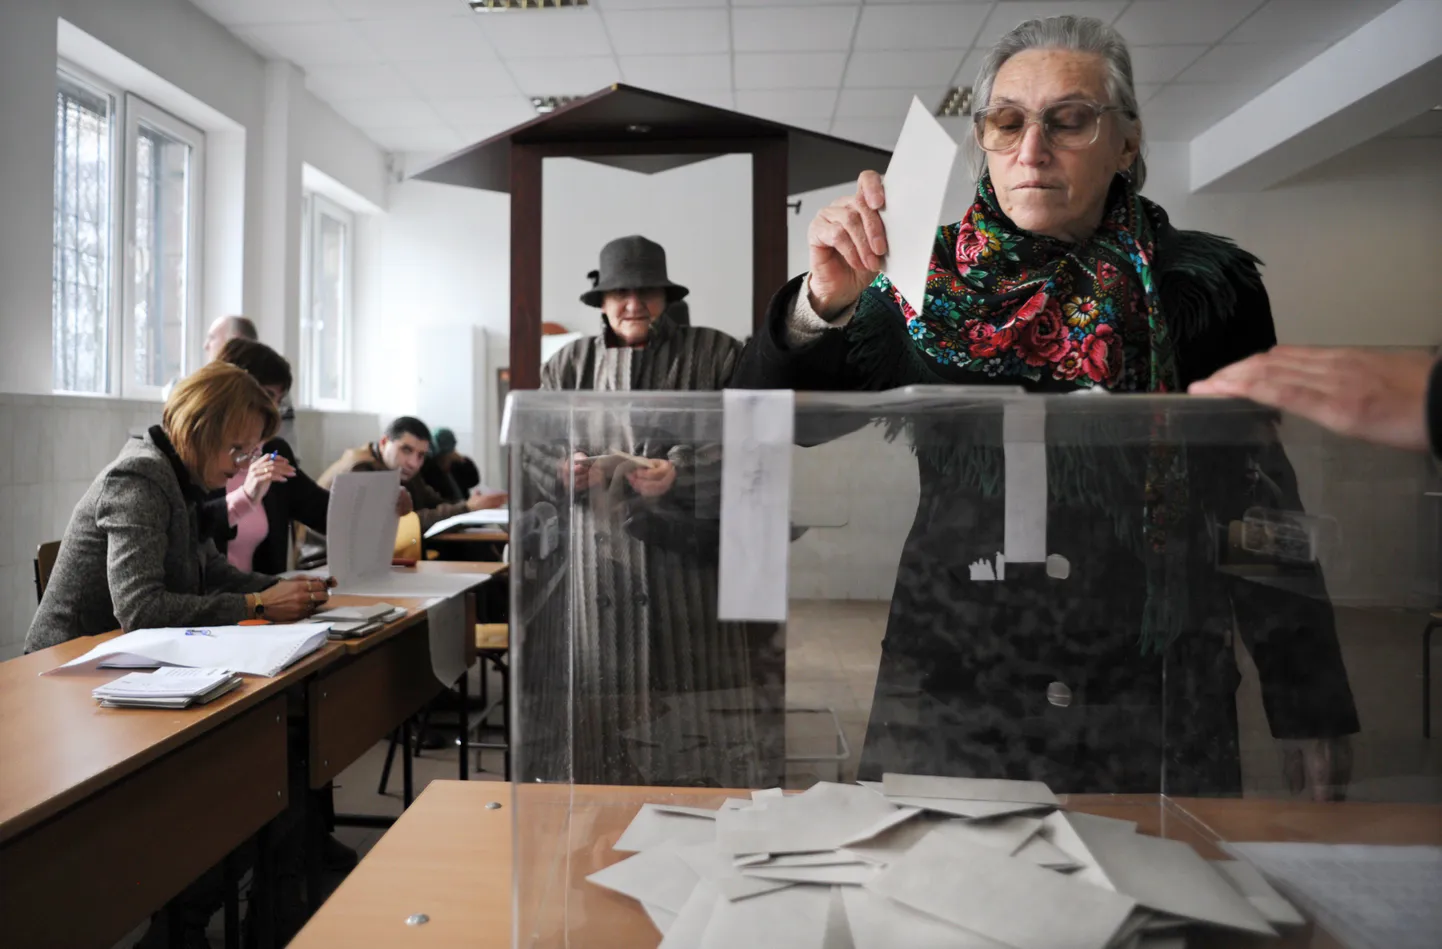 Bulgaaria tuumajaama rahvahääletus kukkus vähese osaluse tõttu läbi.